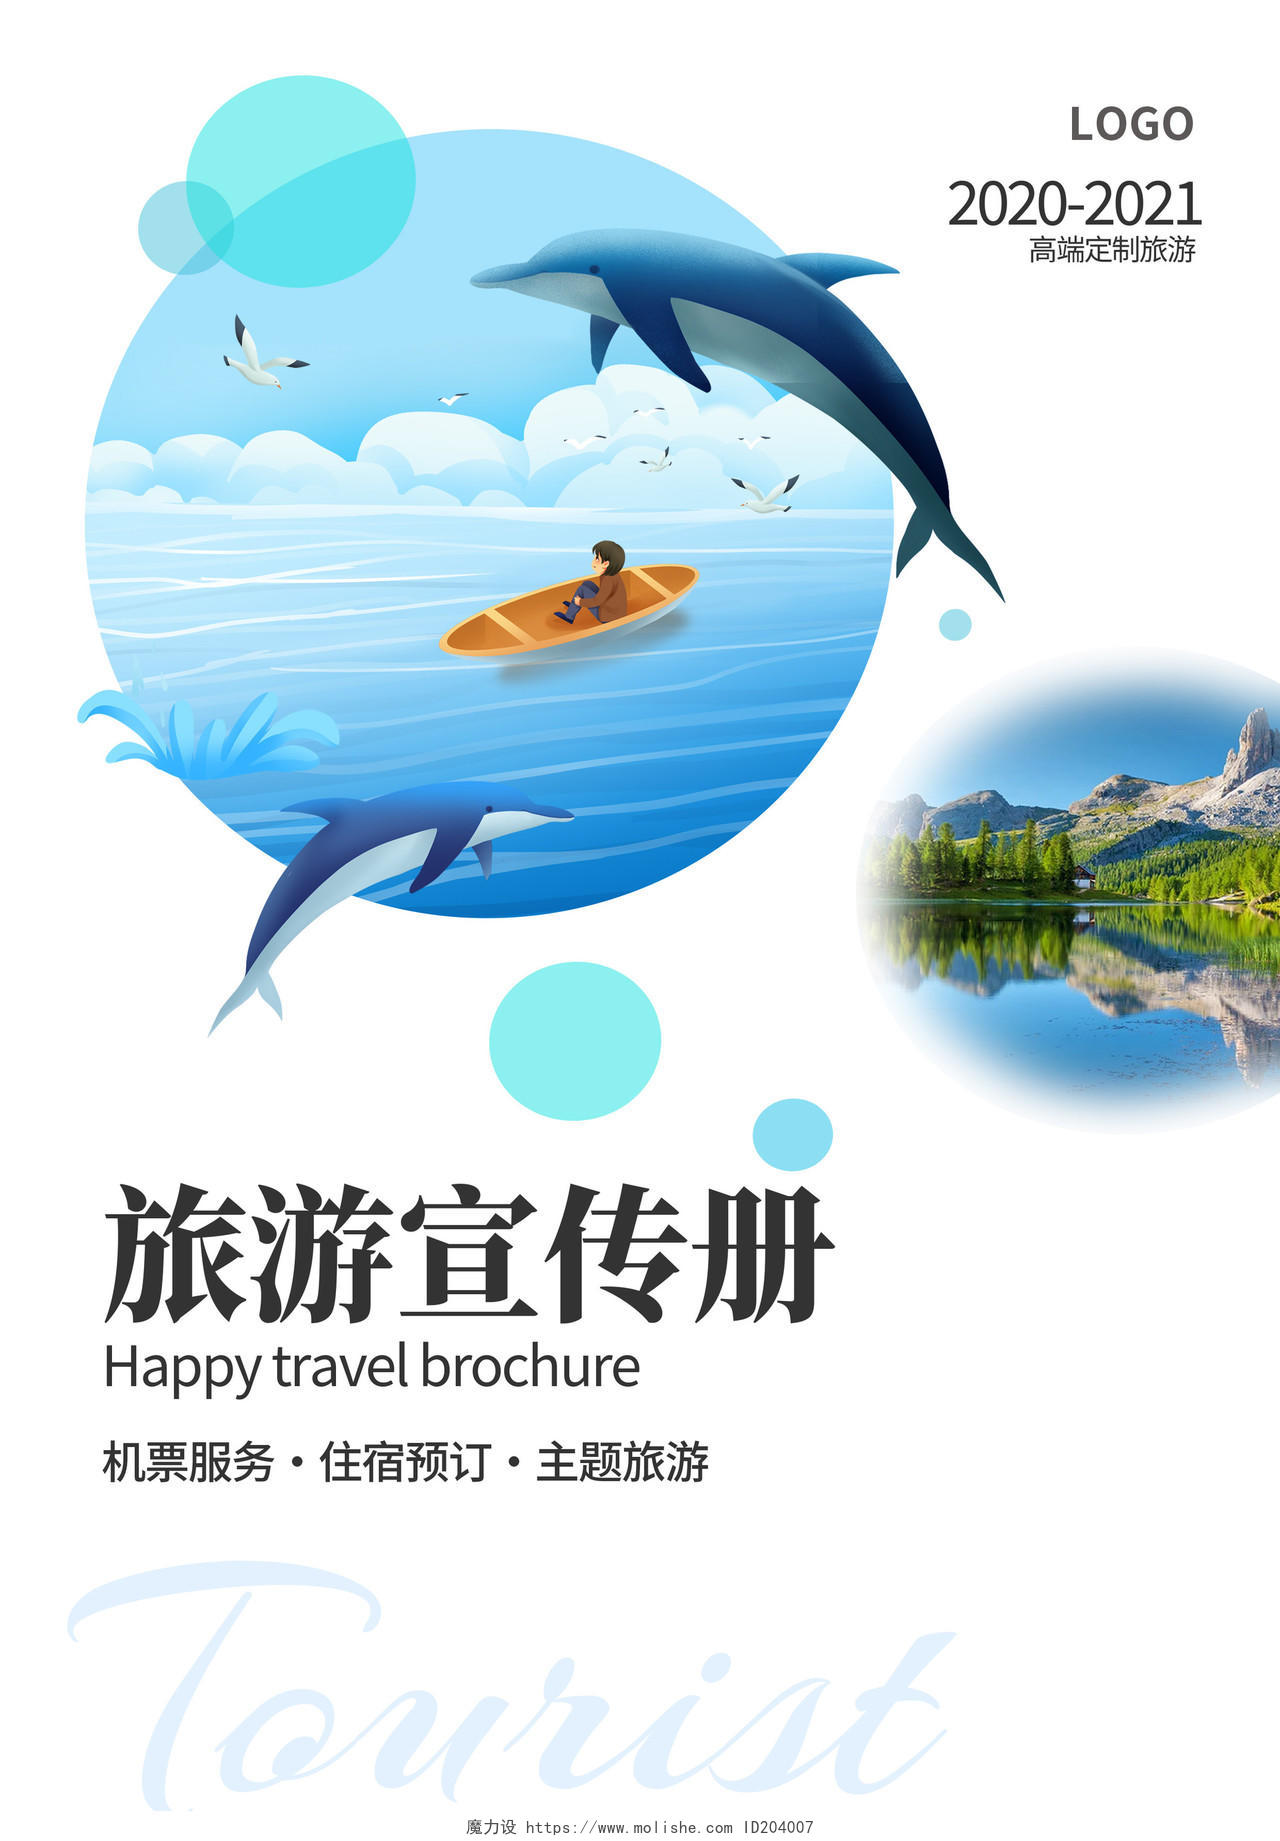 蓝白色插画山水画简洁风旅游宣传册旅游画册封面